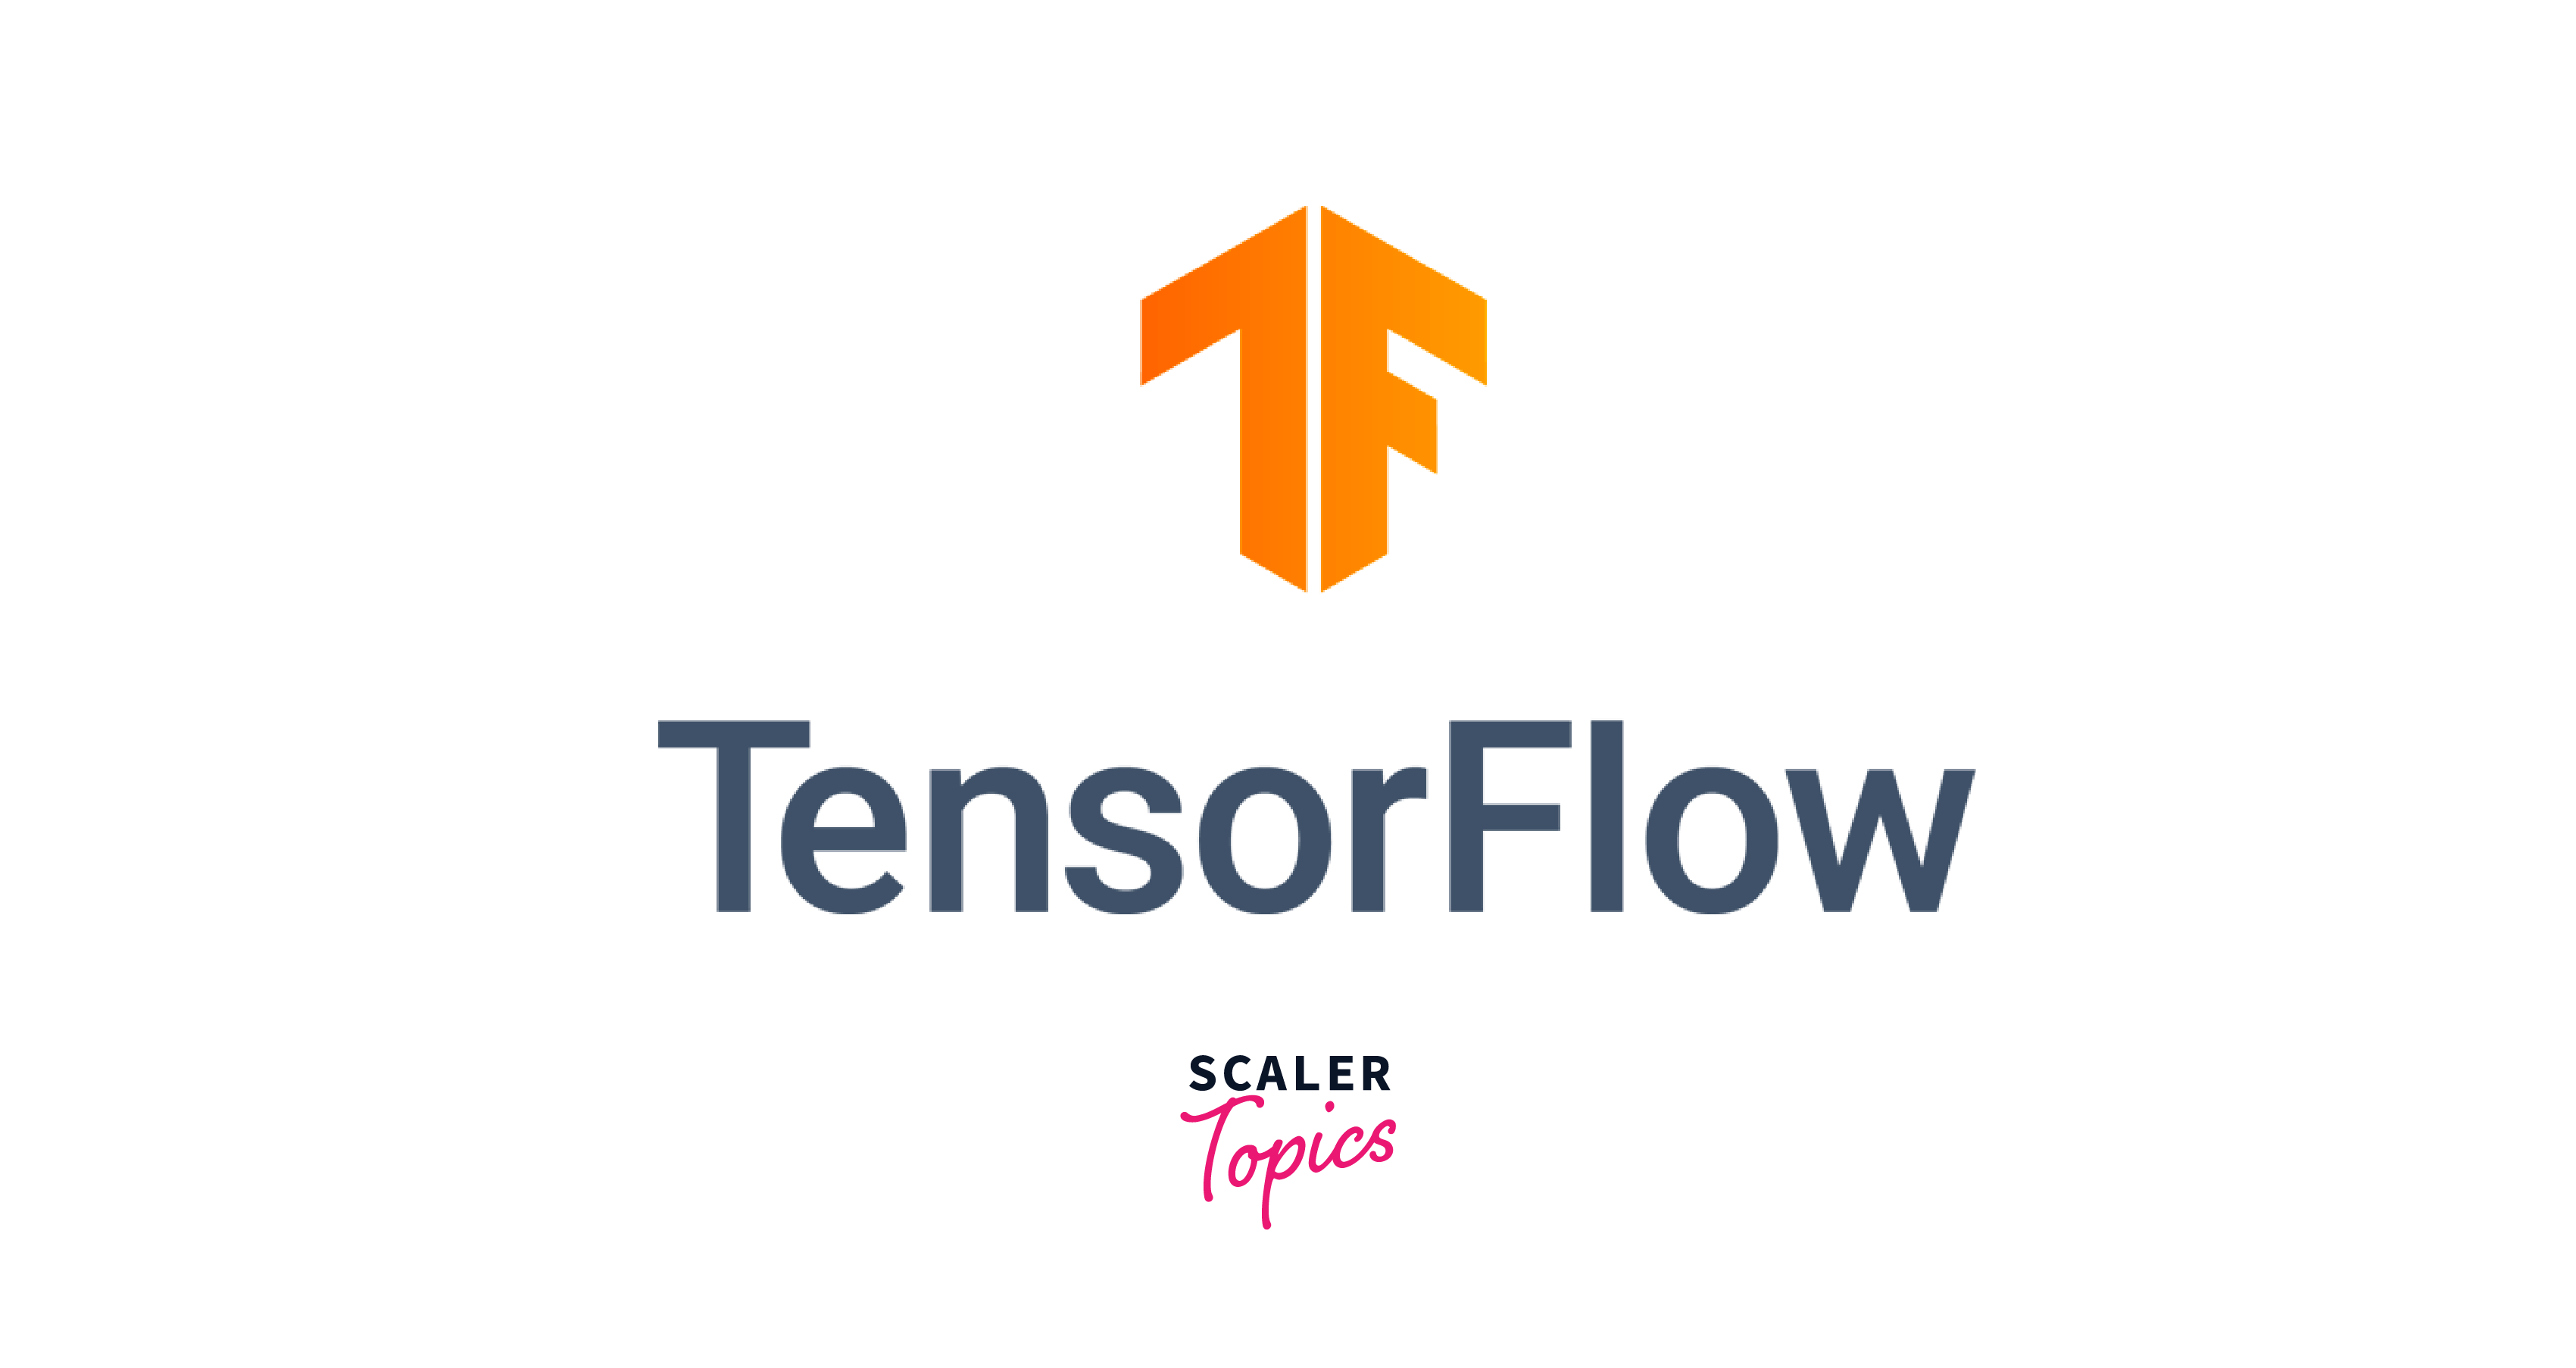 tensorflow logos